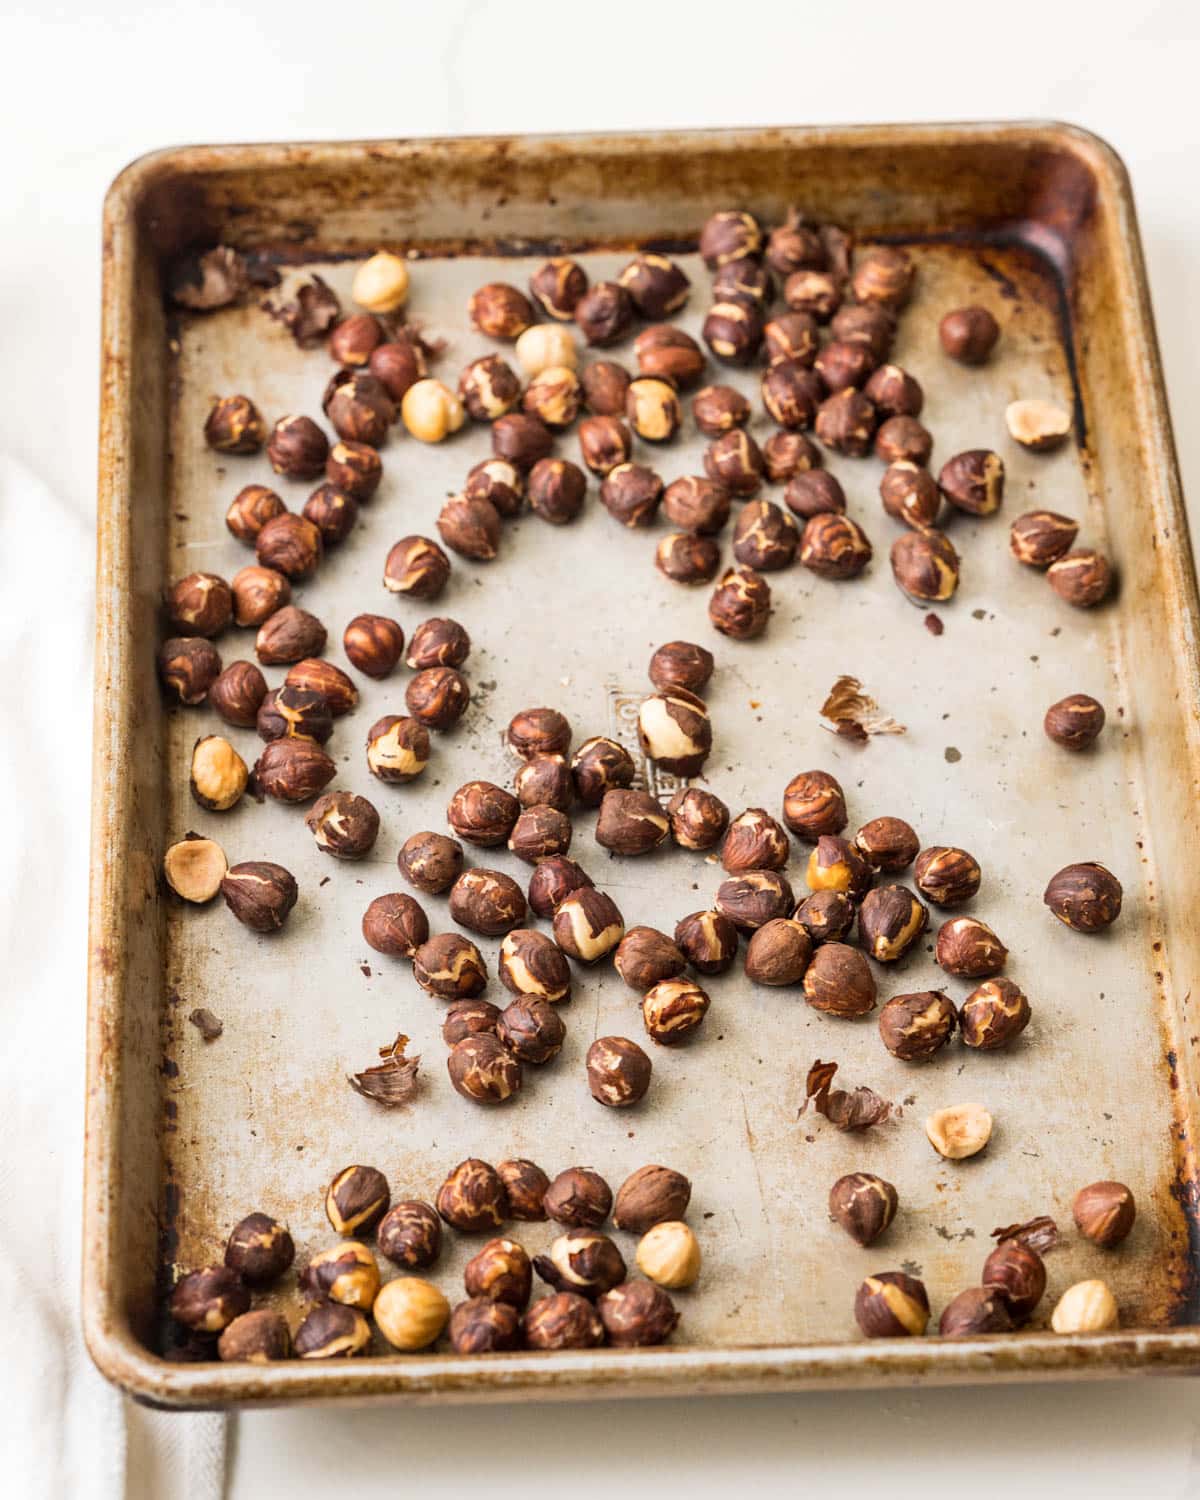 toasted hazelnuts on a baking sheet.